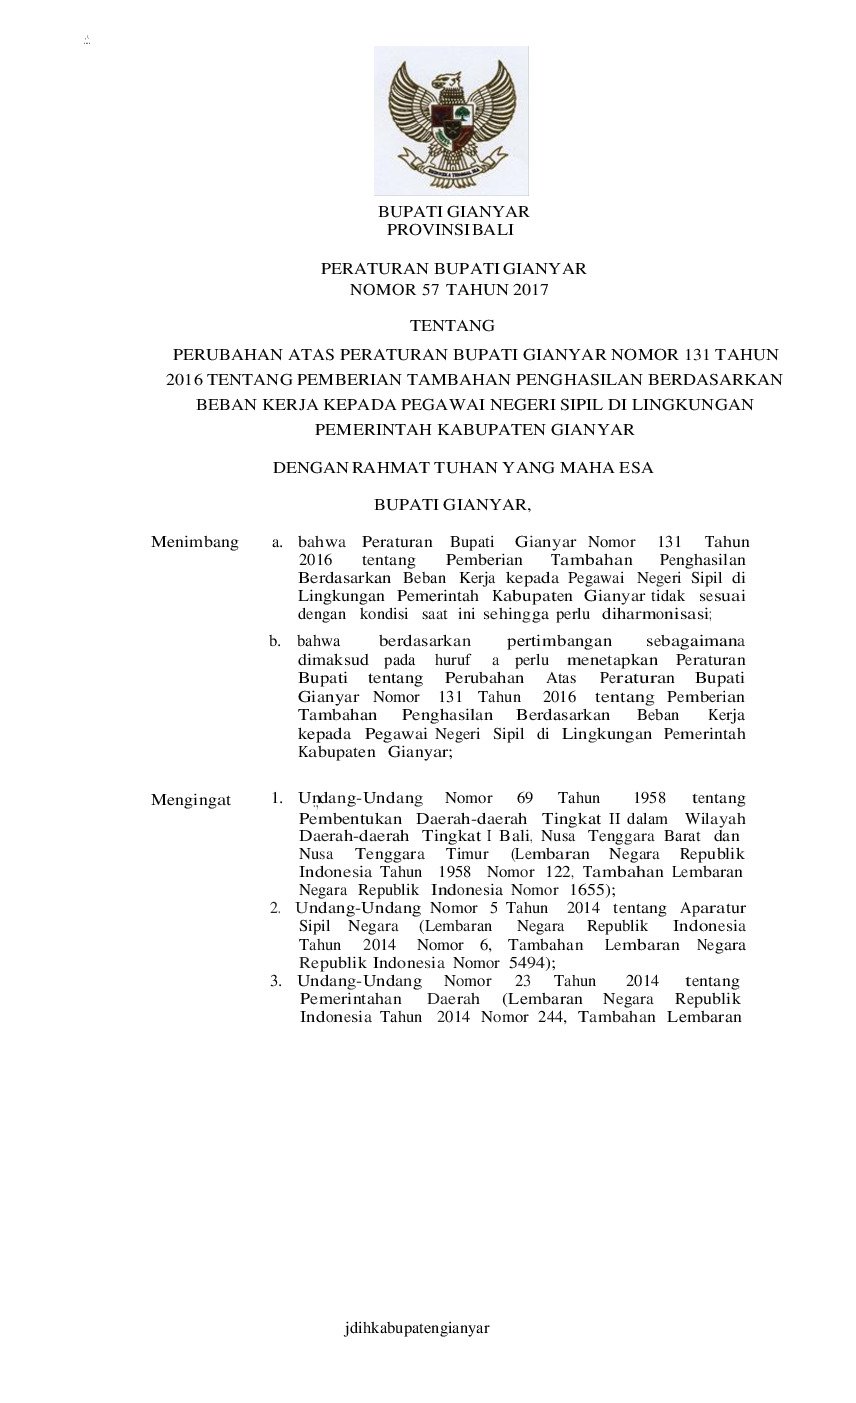 Peraturan Bupati Gianyar No 57 tahun 2017 tentang Perubahan Atas Peraturan Bupati Gianyar Nomor 131 Tahun 2016 tentang Pemberian Tambahan Penghasilan Berdasarkan Beban Kerja kepada Pegawai Negeri Sipil di Lingkungan Pemerintah Kabupaten Gianyar